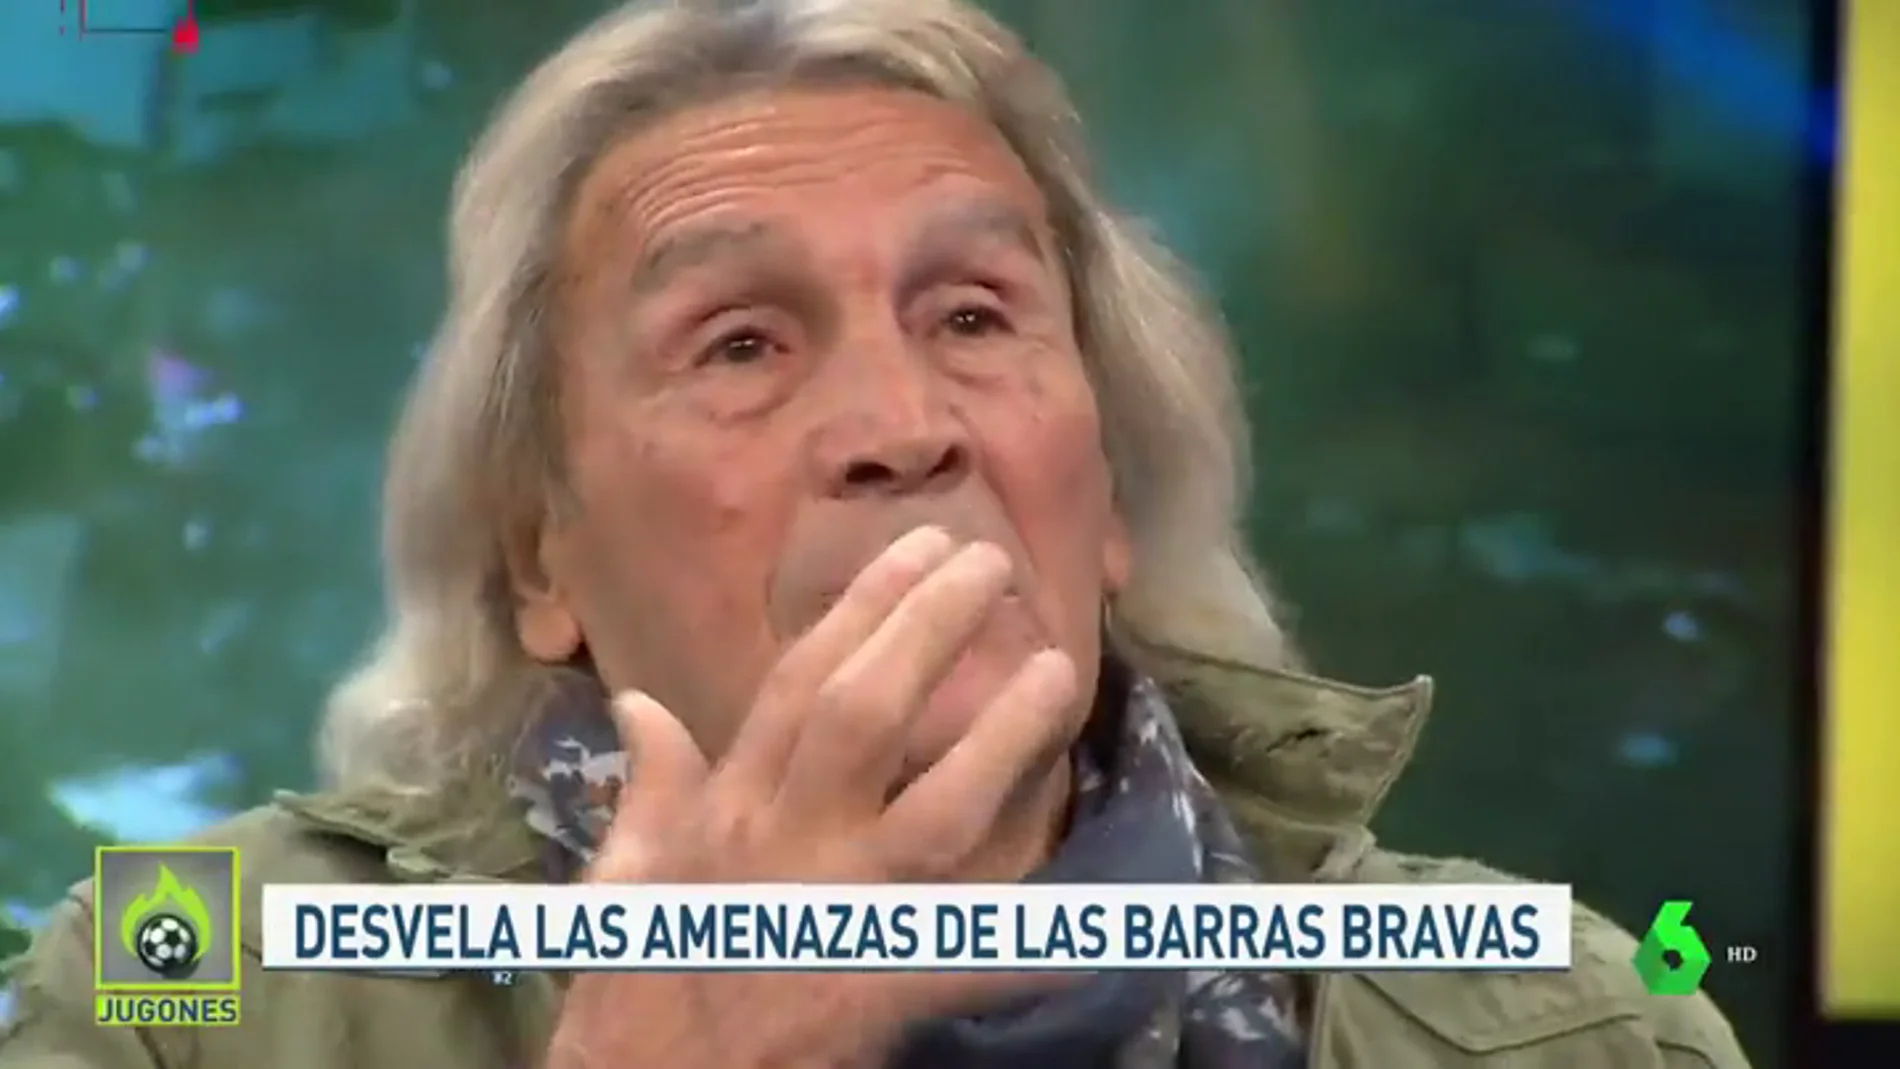 El 'Loco' Gatti habla sobre los ultras en Argentina: "Entraron con un revólver al vestuario y nos dijeron que debíamos ganar"